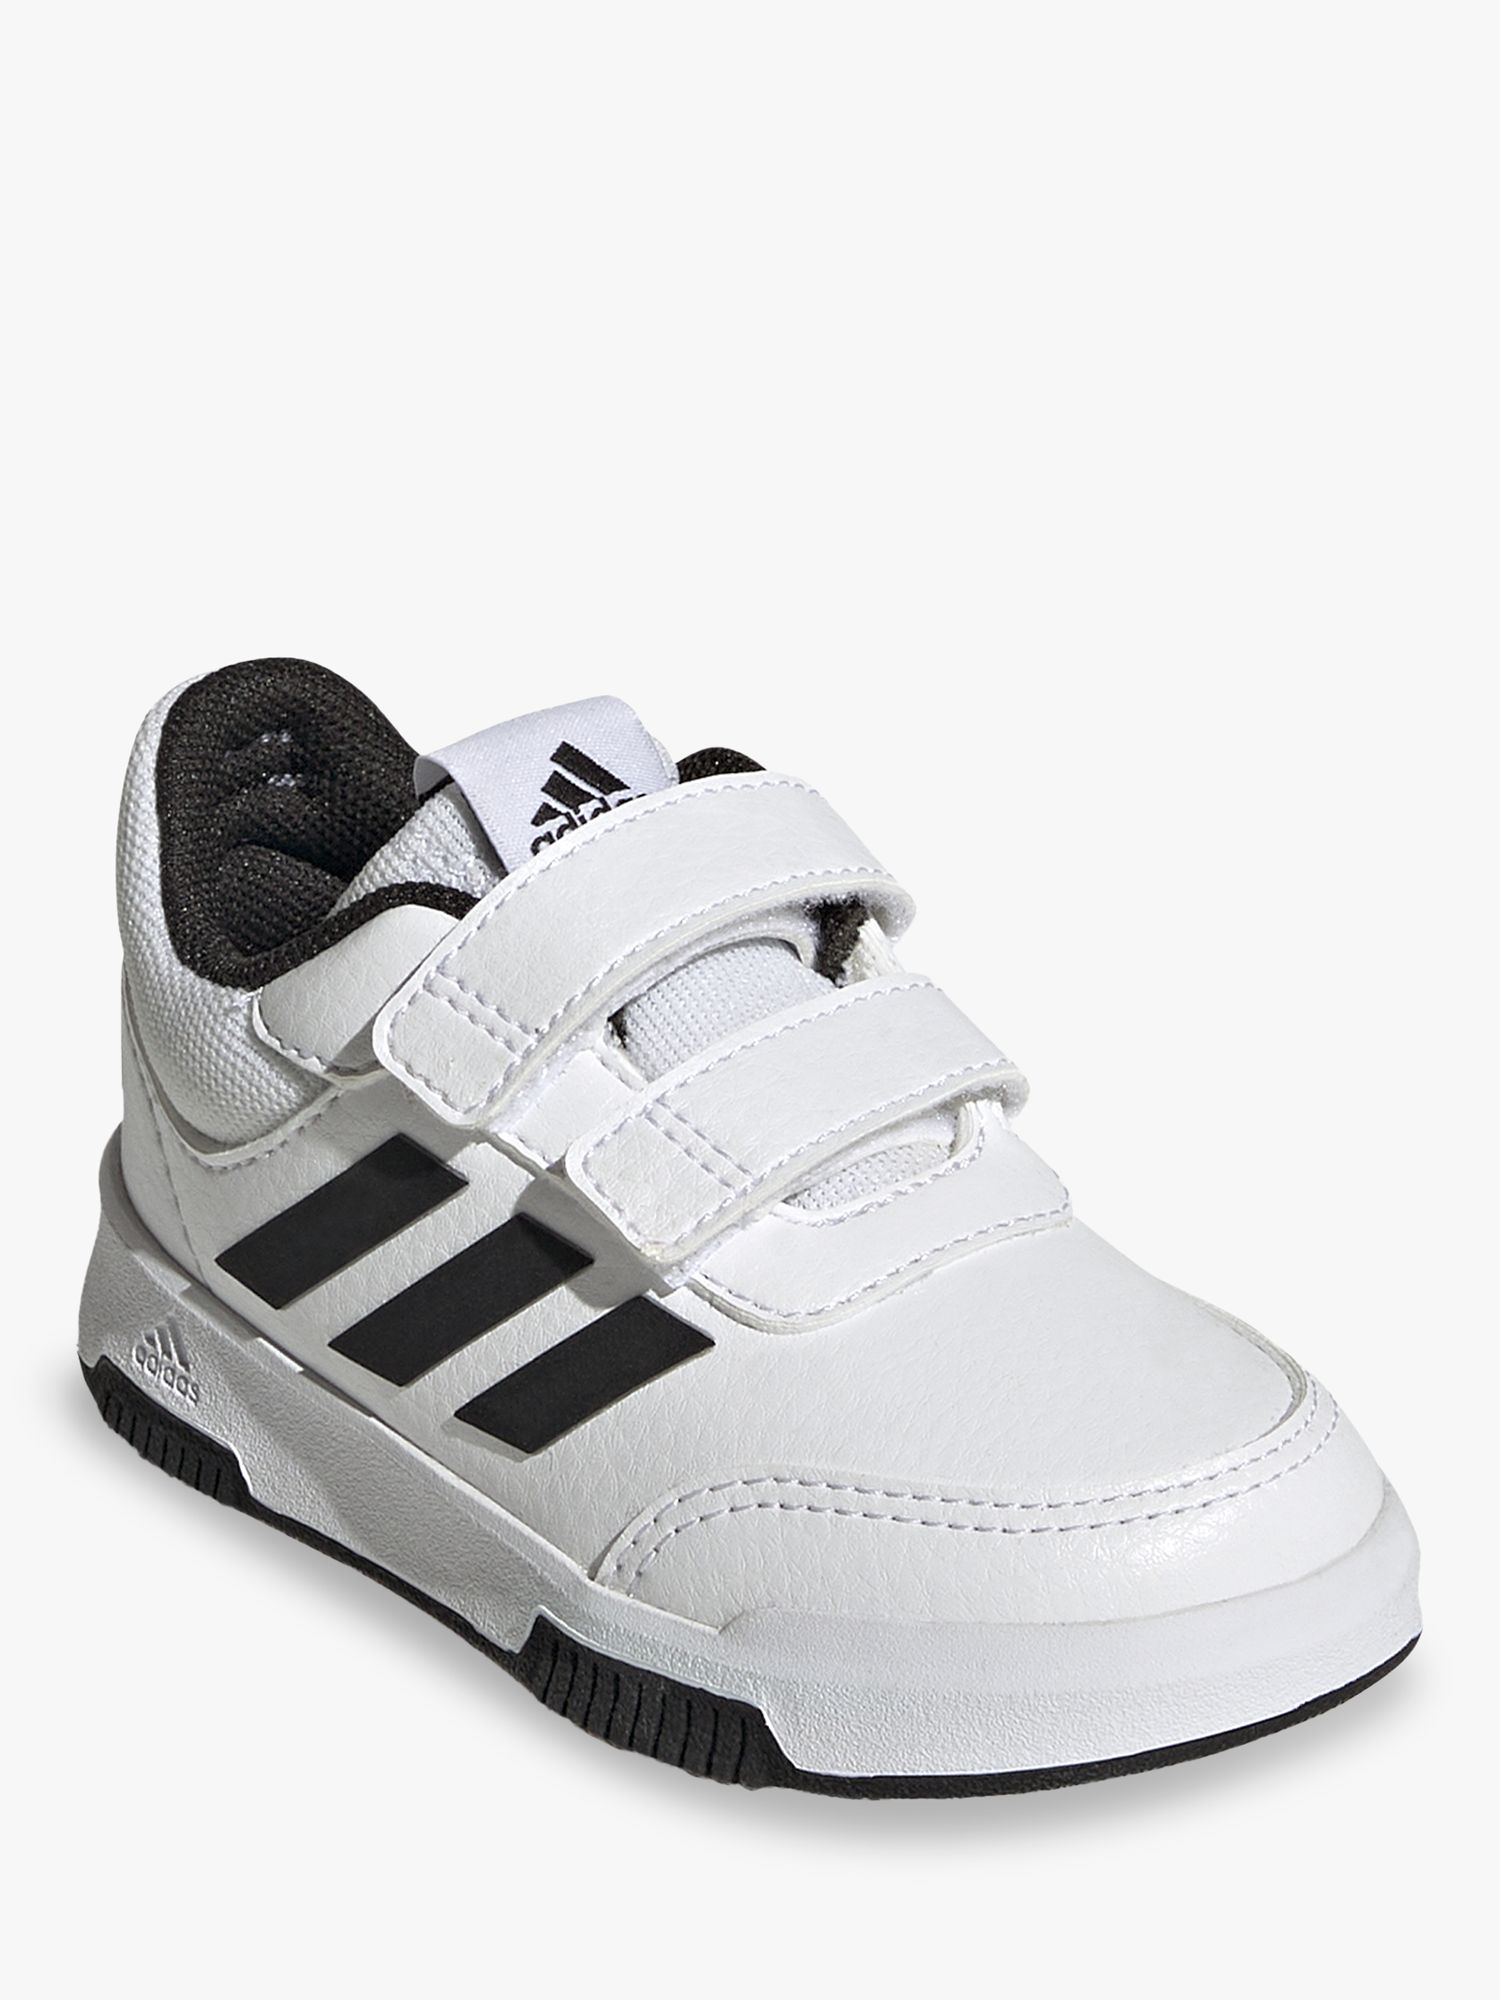 adidas Kids' Tensaur Sport Riptape Running Shoes, White/Black/Black, 5 Jnr